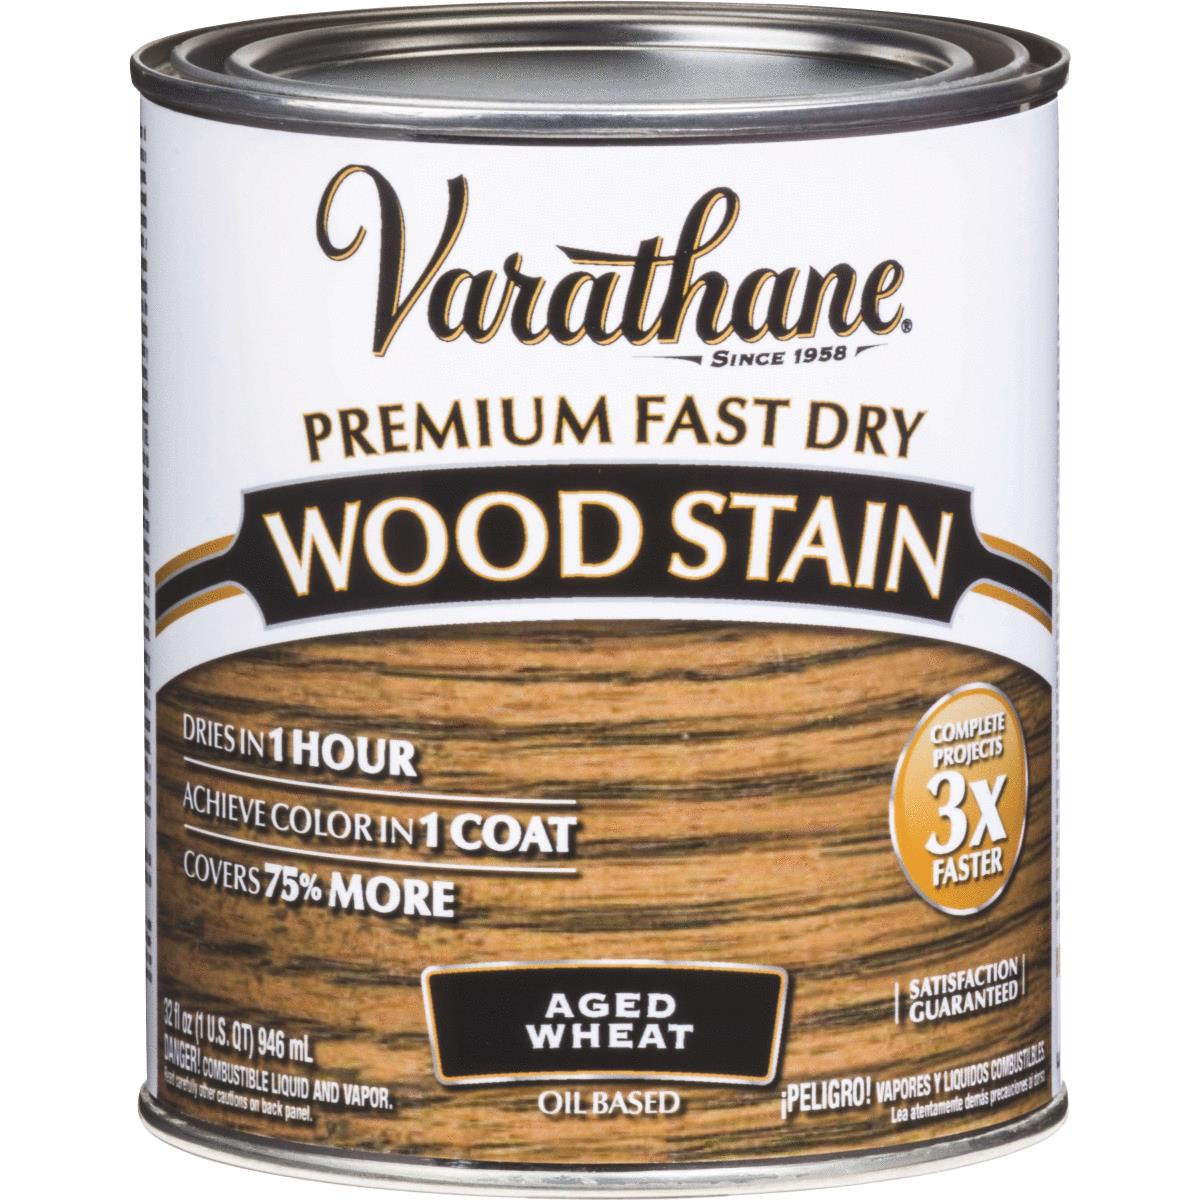 Масло VARATHANE FAST DRY банка 0,236 л, быстросохнущее тонирующее, цвет спелая пшеница масло конопляное для обработки древесины и защиты от гнили 1 литр